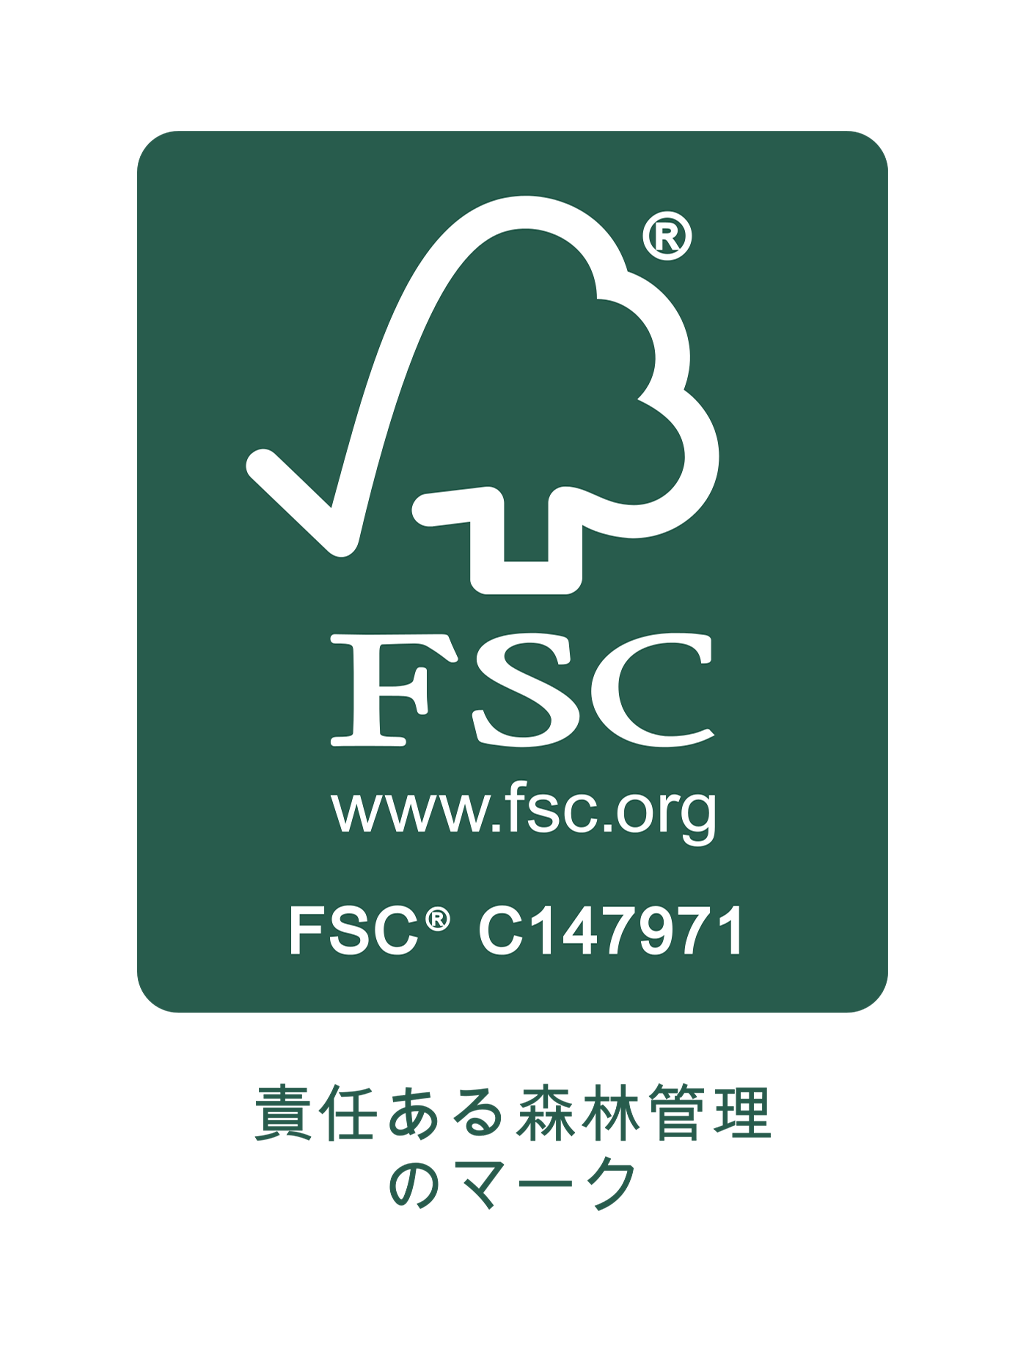 FSC www.fsc.org